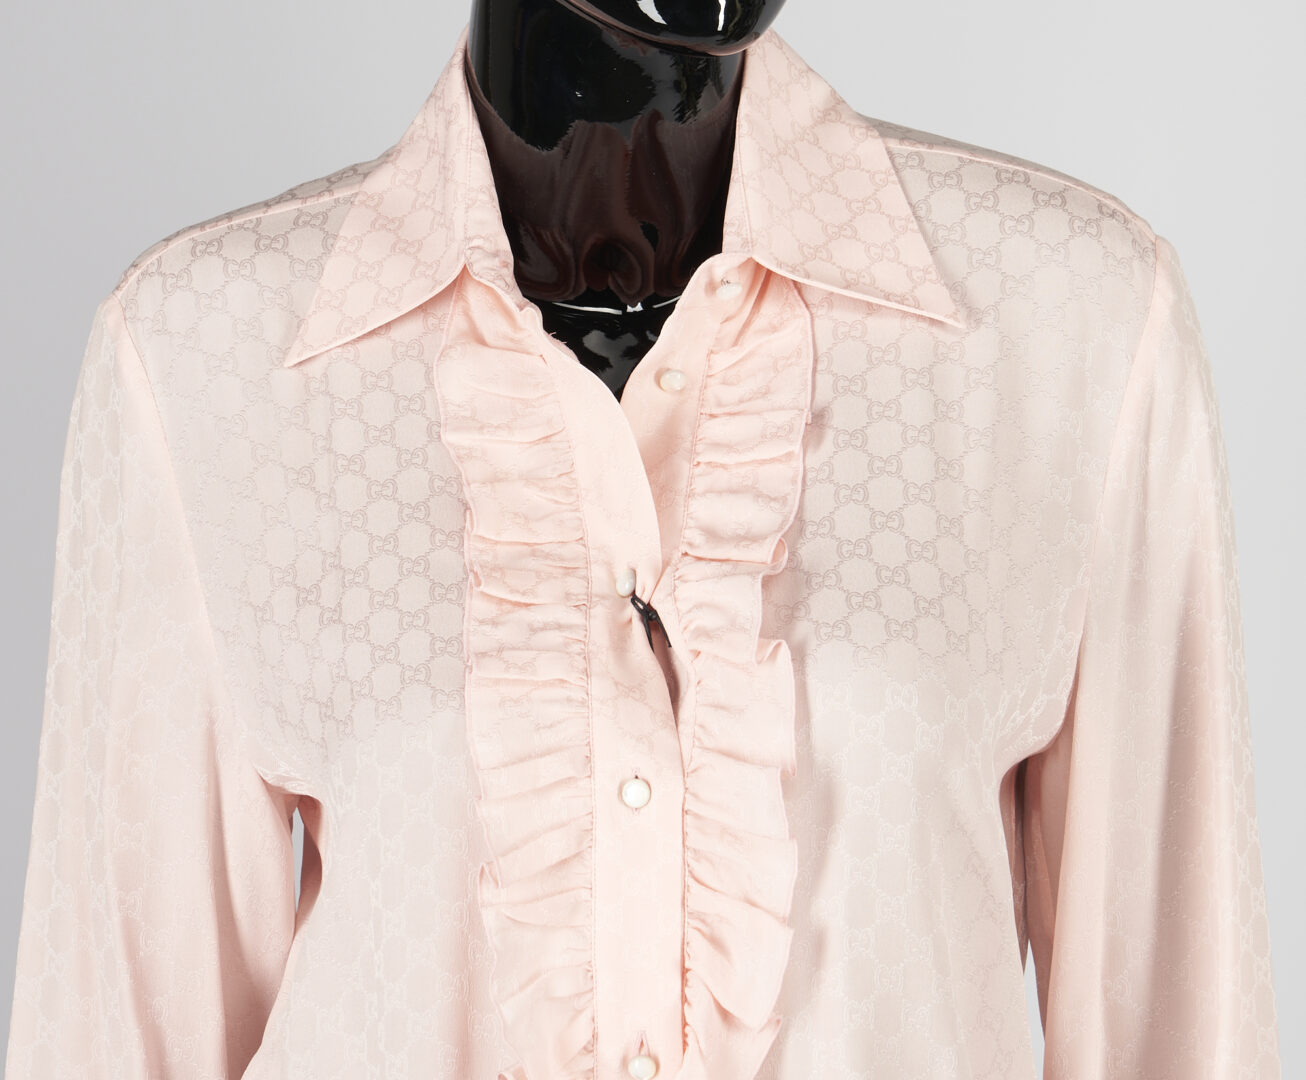 Lot 1178: 3 Gucci Silk Garments, incl. Flora Kris Knight Dress